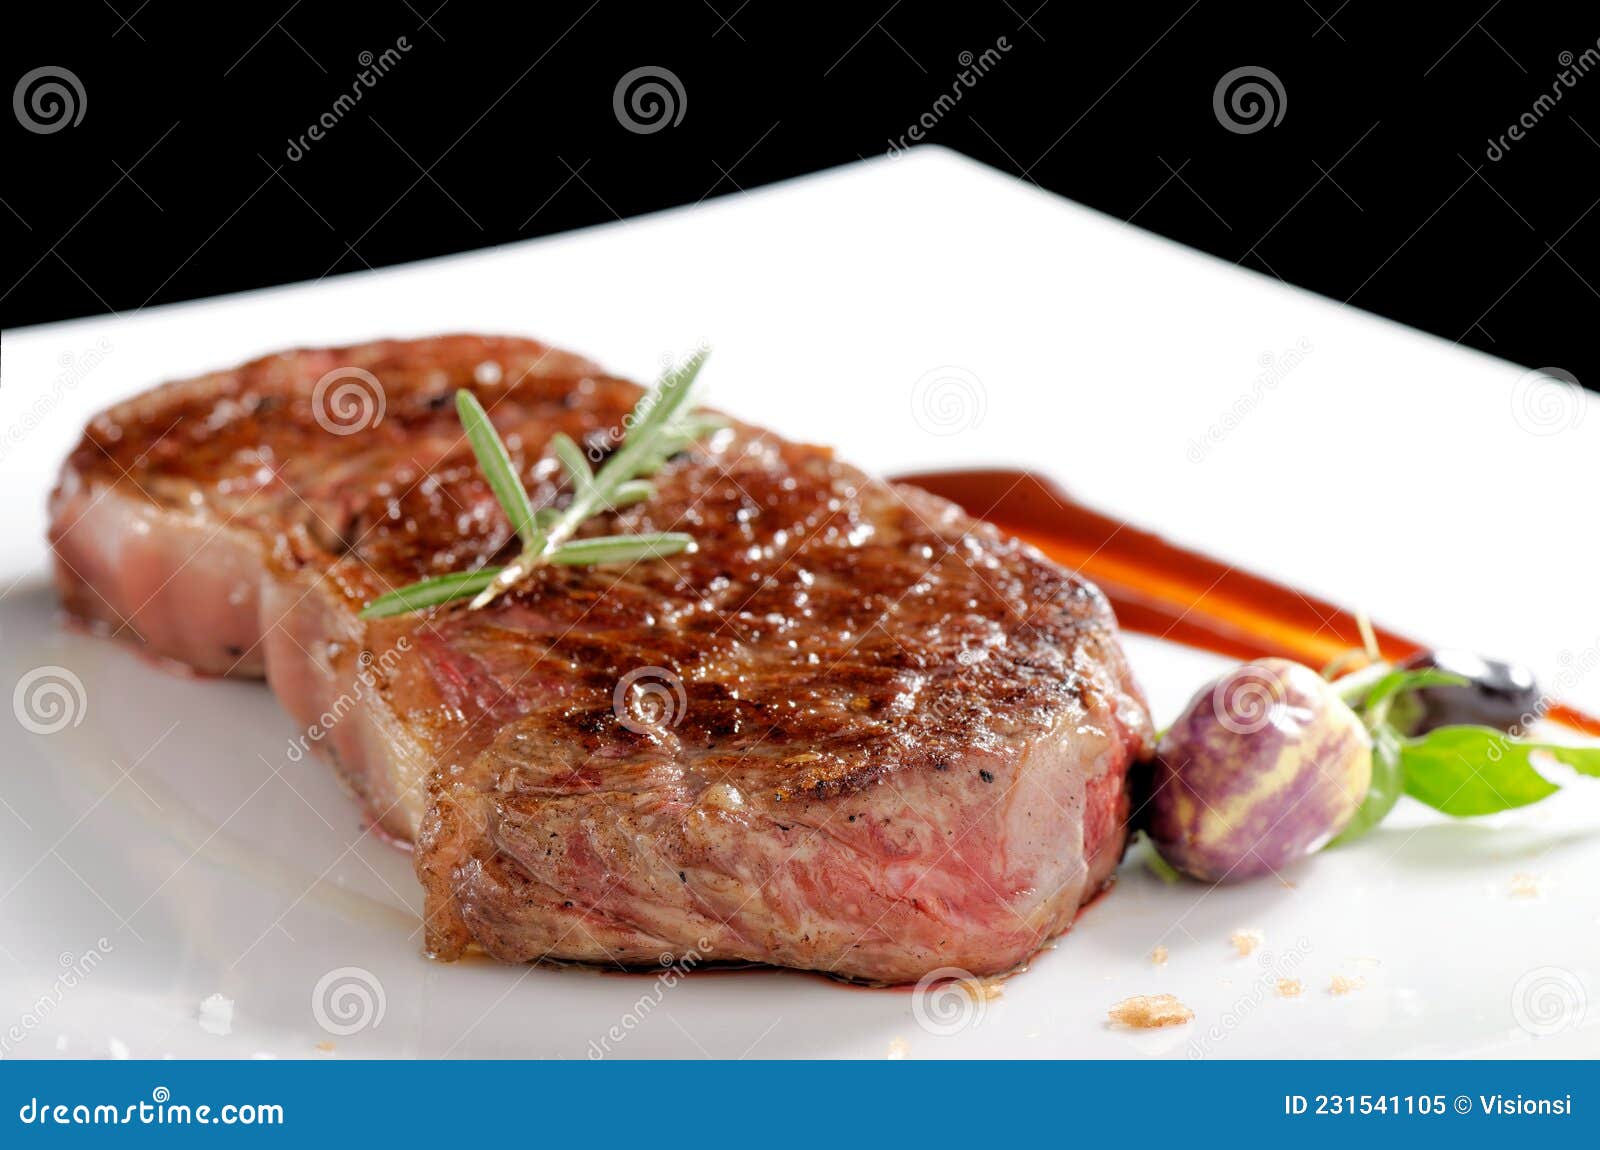 bottom round steak, medium